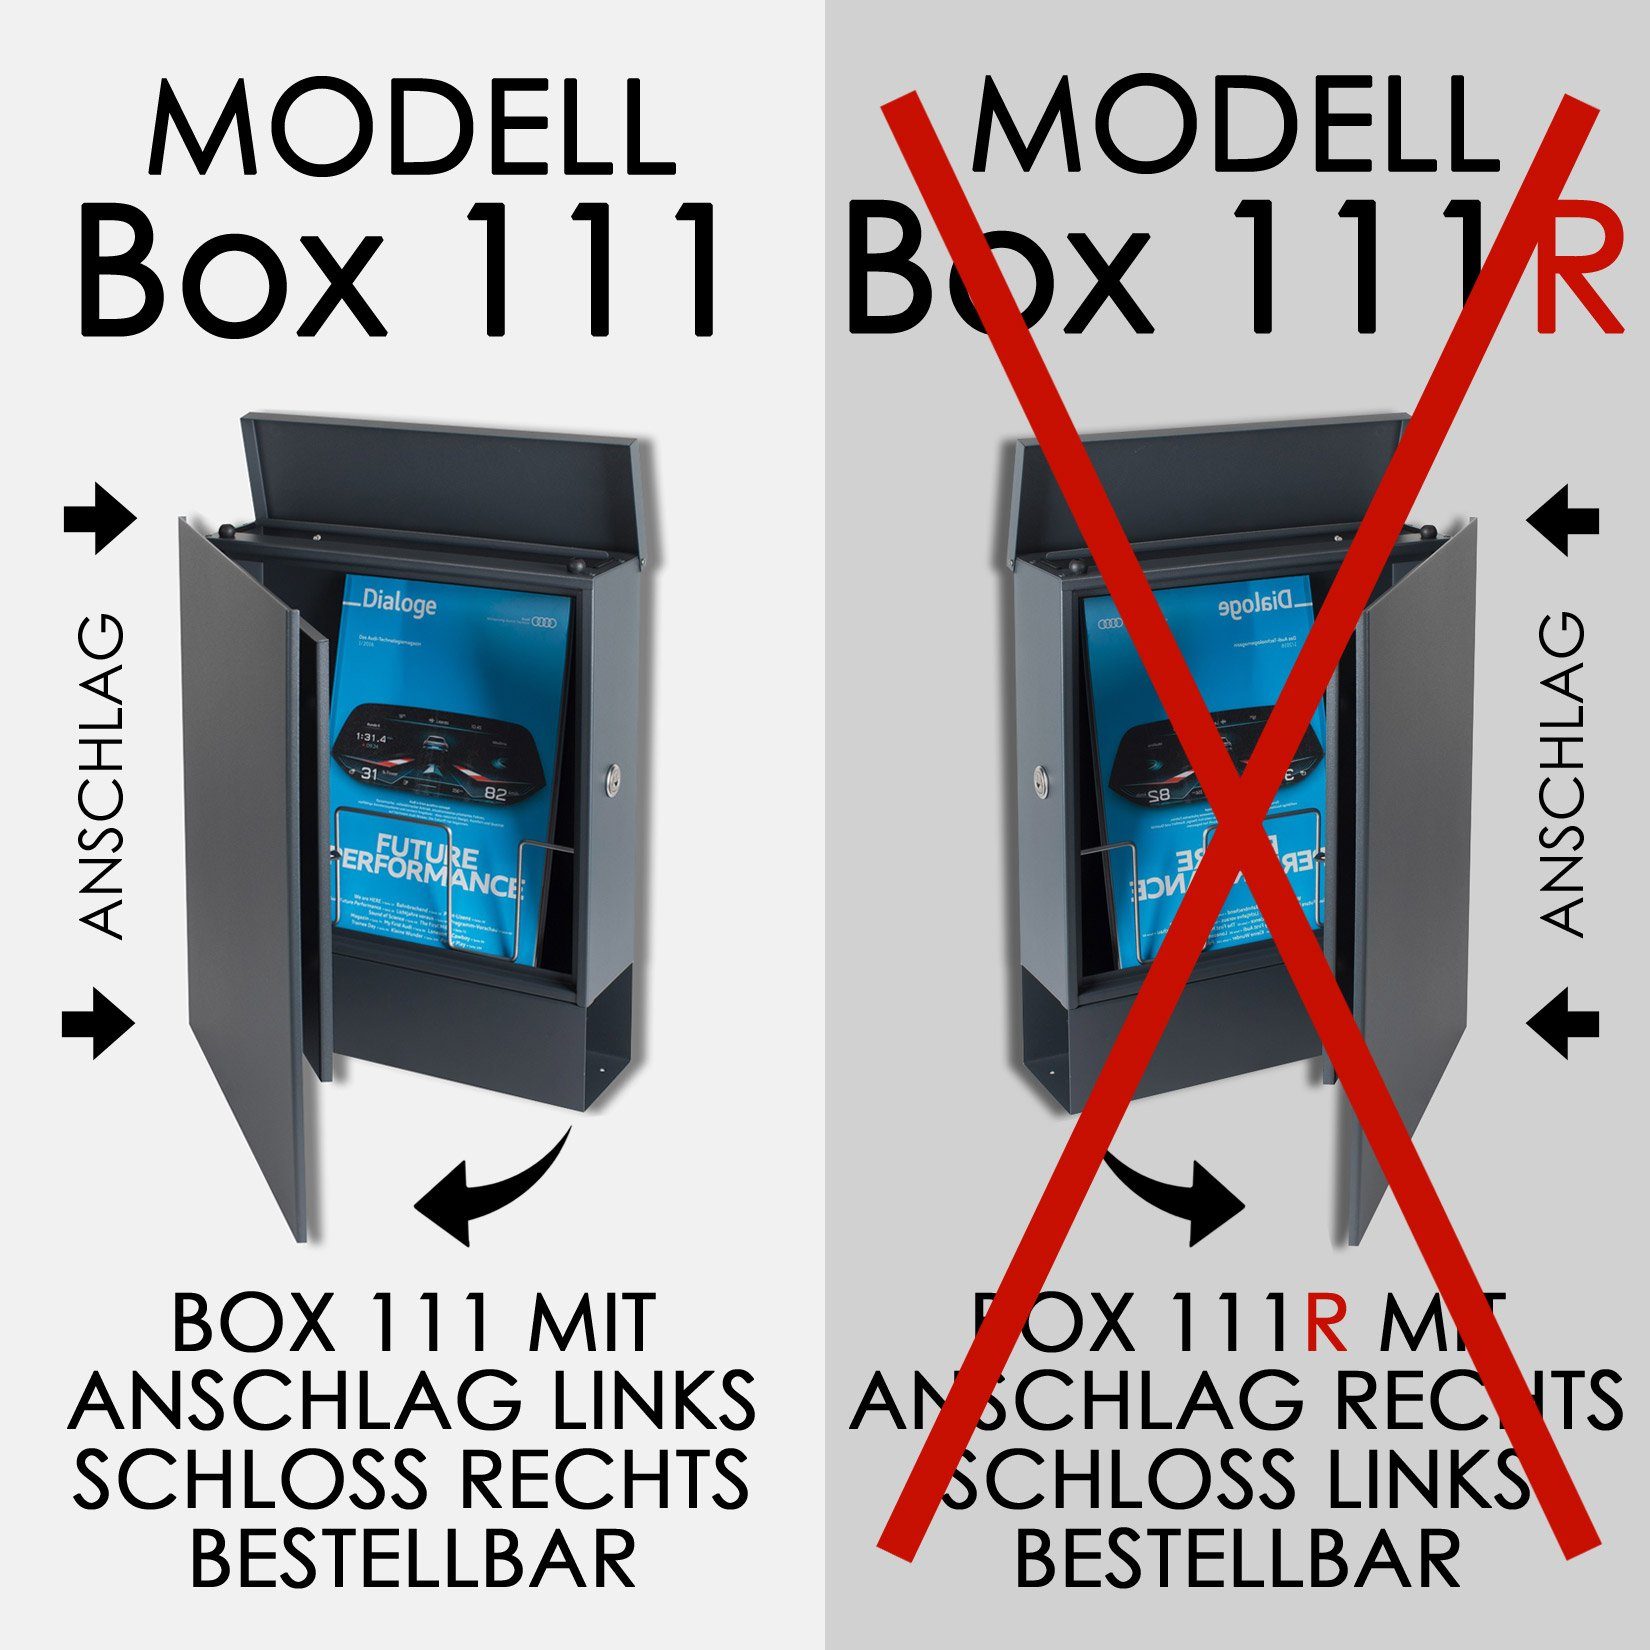 MOCAVI Briefkasten VA Vers SBox Verschluss Briefkasten mit Pfosten Zeitungsfach bestellbar) mit passender Box für (RAL 111b Wetterseite, 9003) beidseitig Standbriefkasten MOCAVI integriert; (einbetonieren), 1 signal-weiss (zusätzlich nutzbar